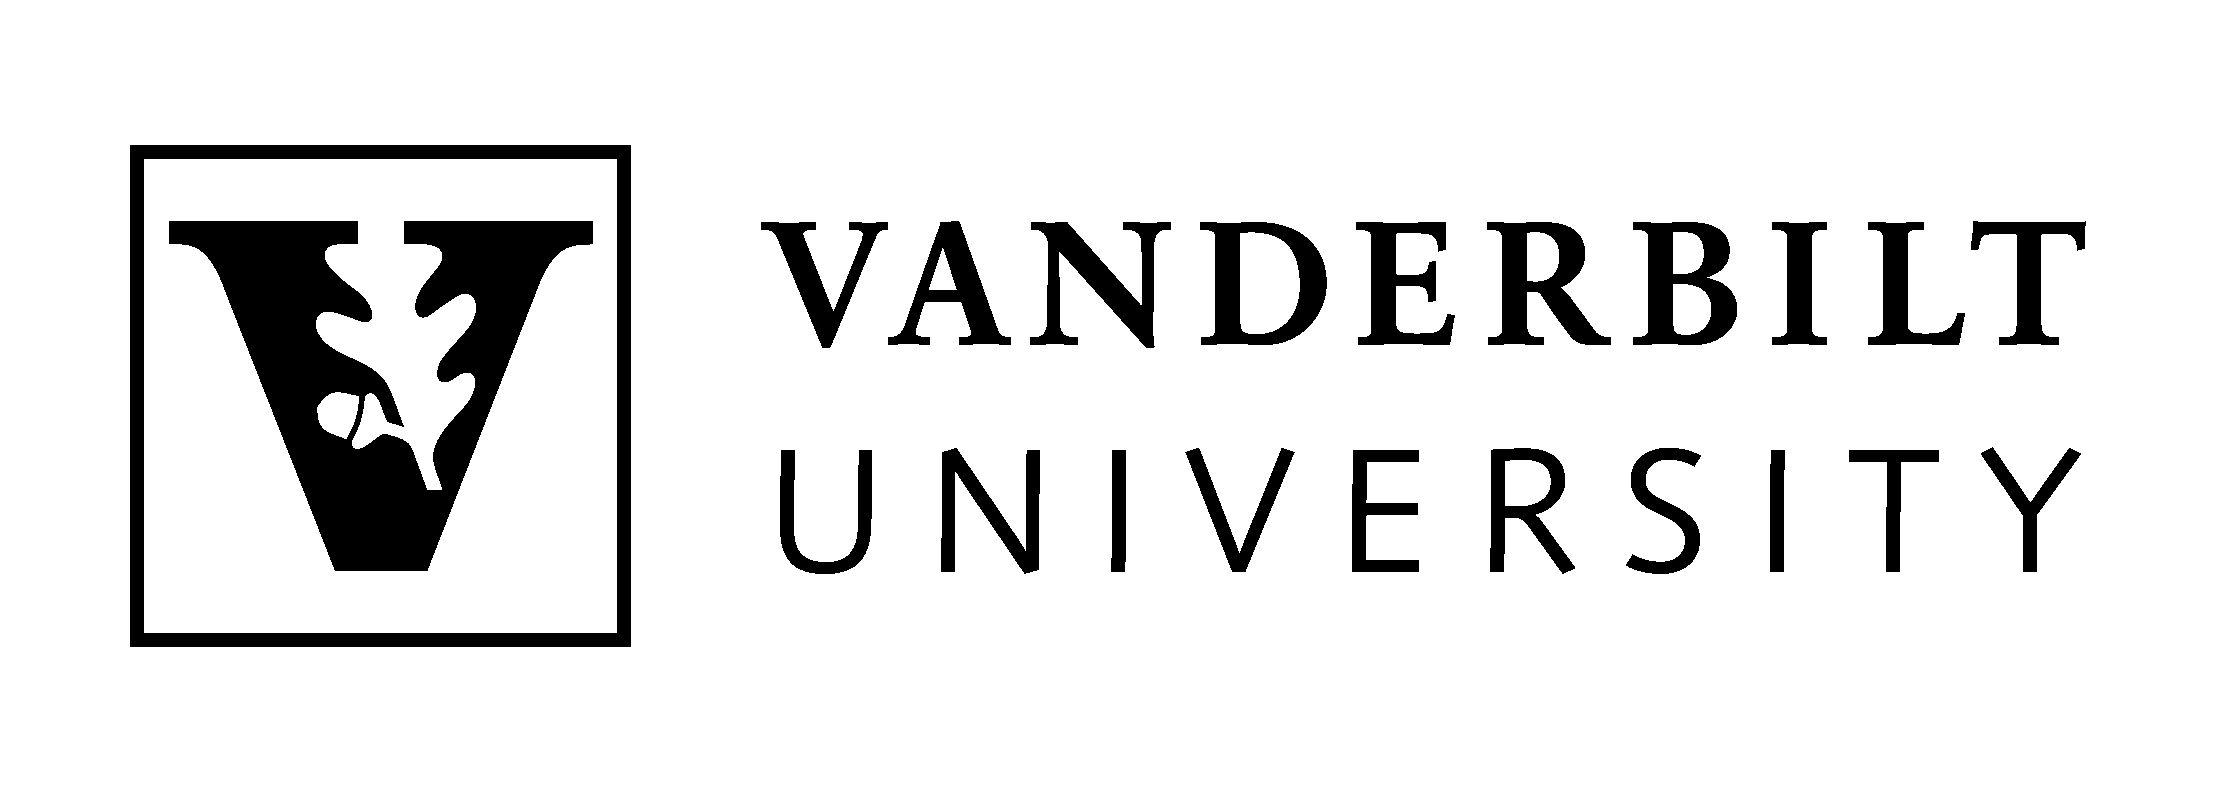 Vanderbilt University Logo - Vanderbilt university Logos